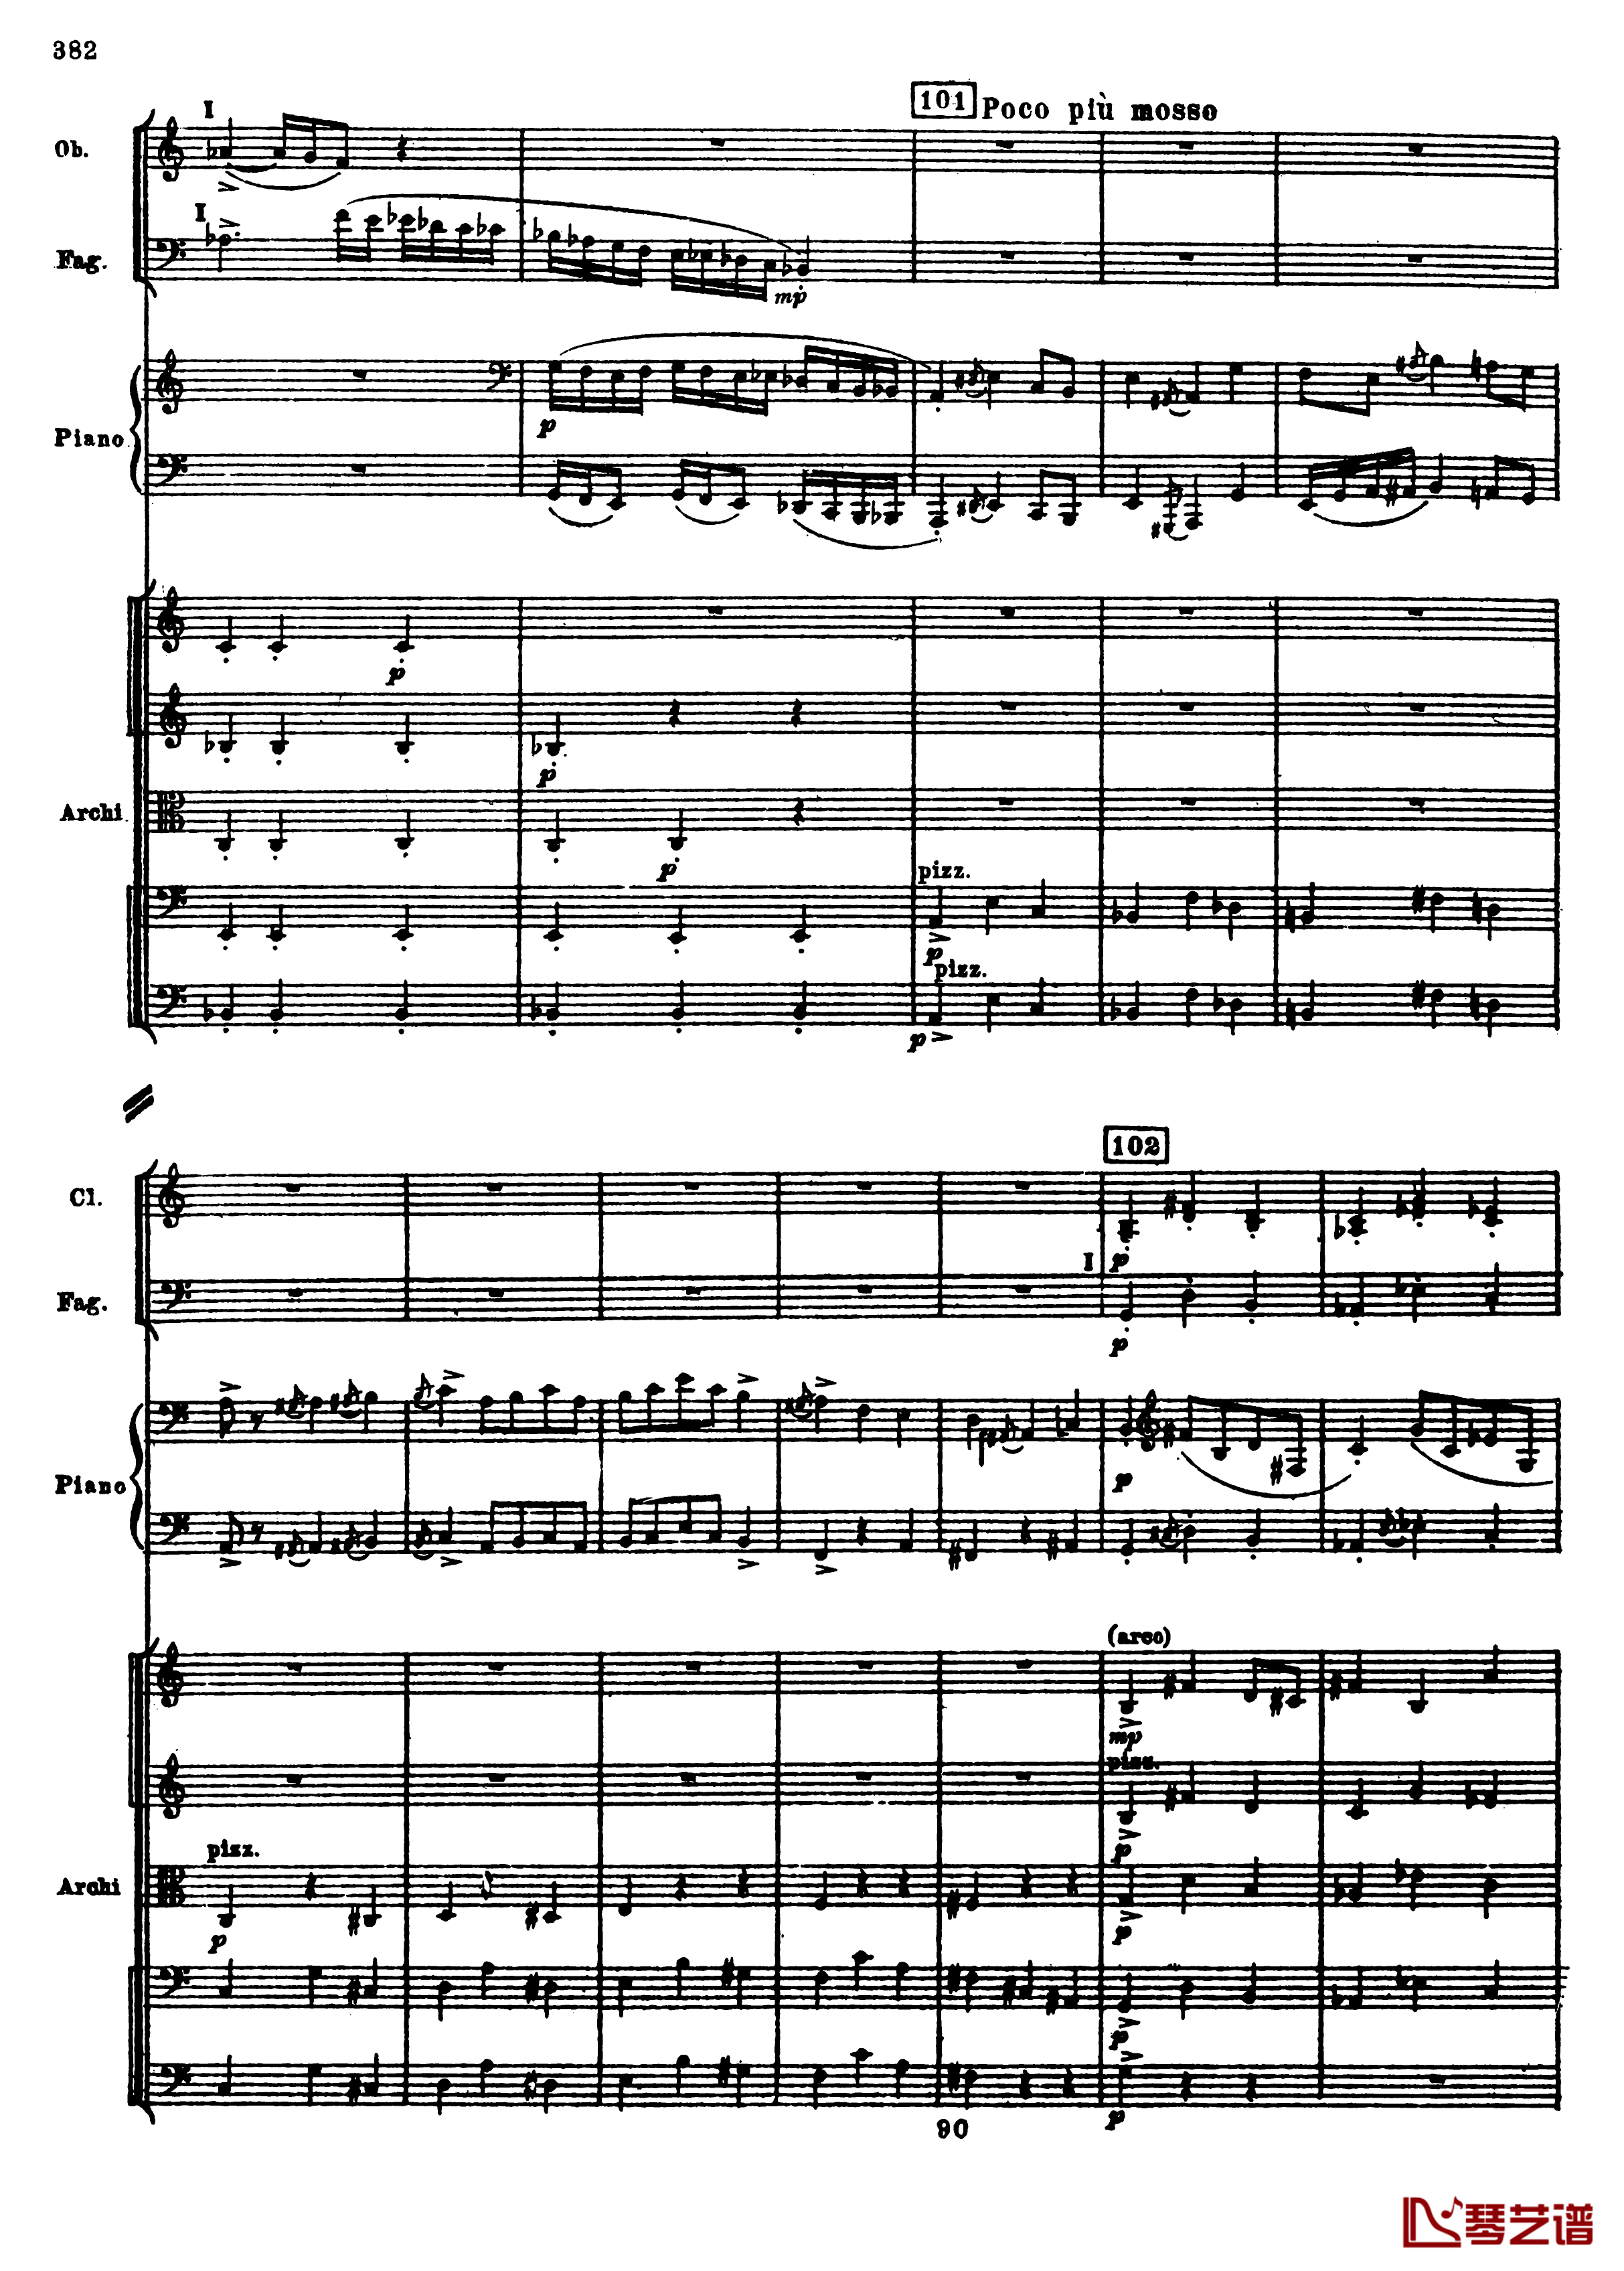 普罗科菲耶夫第三钢琴协奏曲钢琴谱-总谱-普罗科非耶夫114